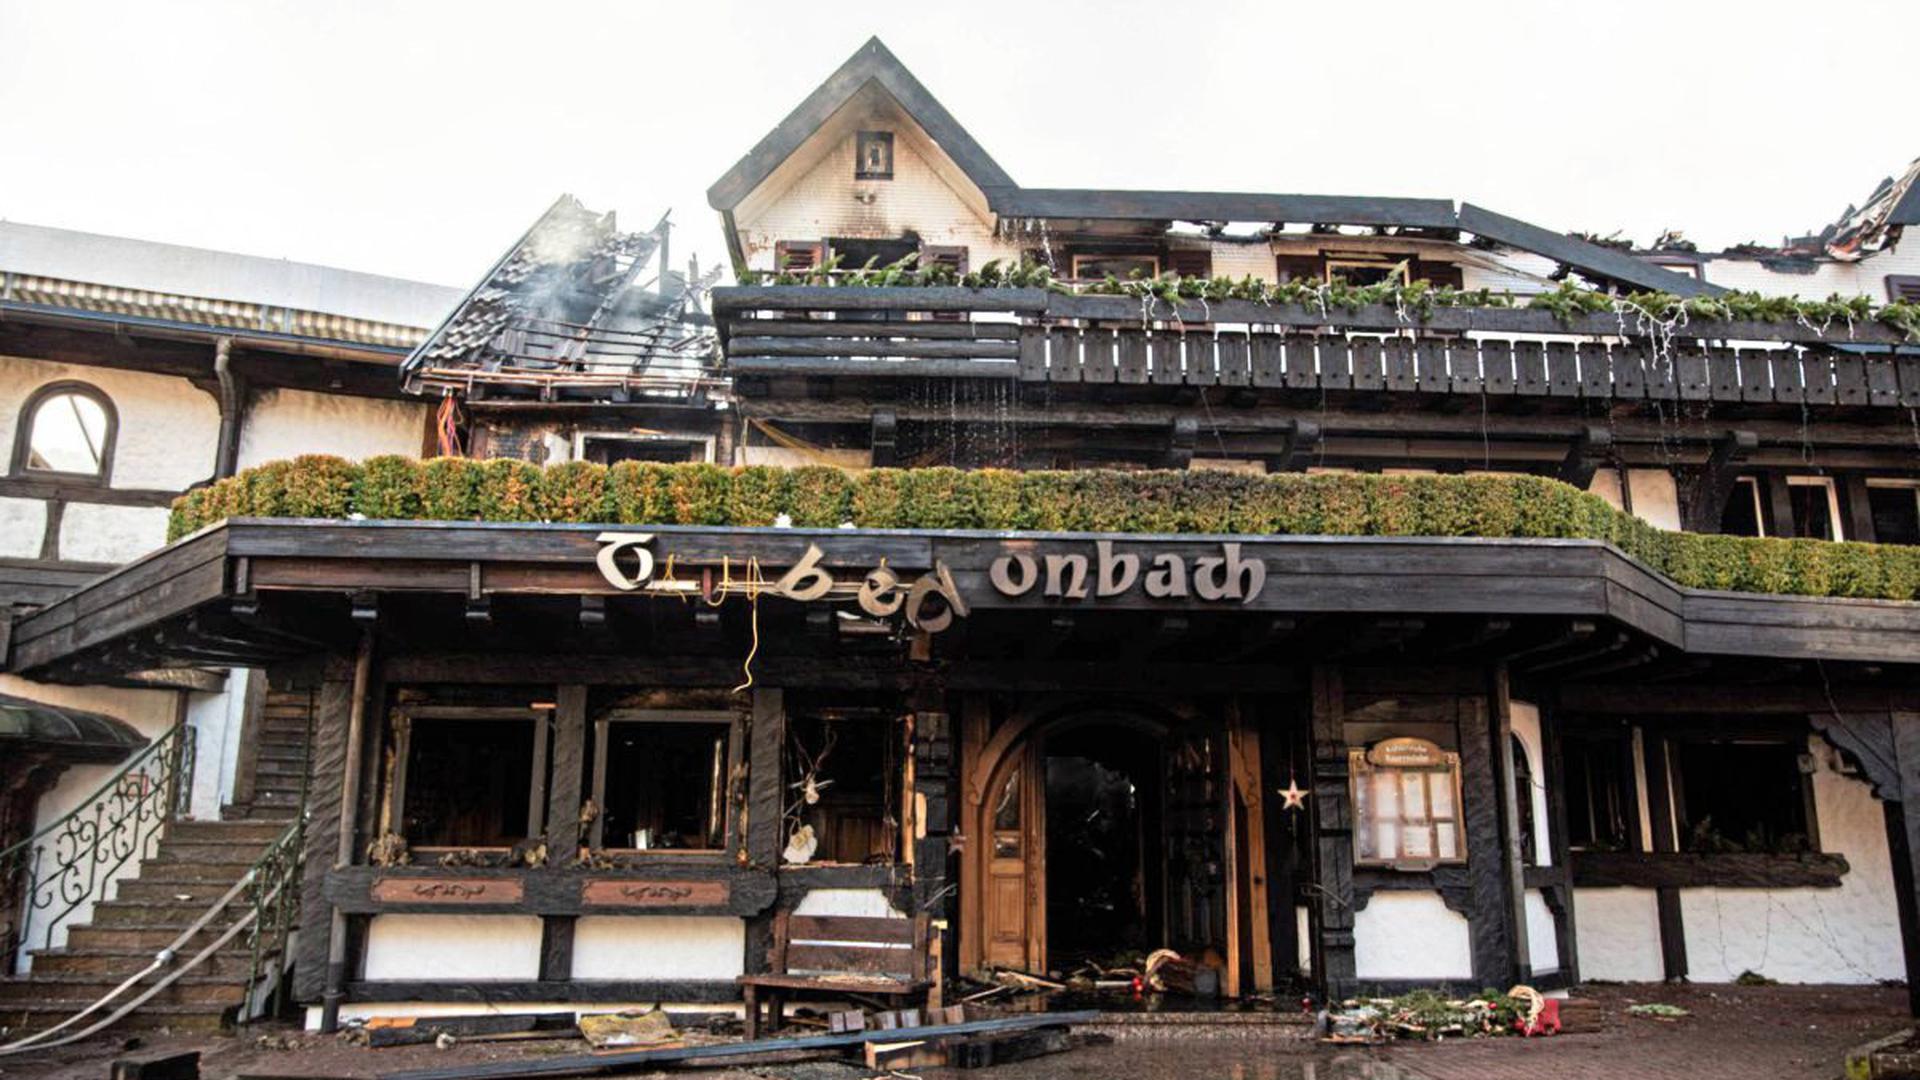 Ausgebrannt ist das renommierte Drei-Sterne-Restaurant „Schwarzwaldstube“ im Baiersbronner Hotel Traube Tonbach. Es gab keine Verletzten, nach ersten Schätzungen liegt der Schaden im Millionenbereich.